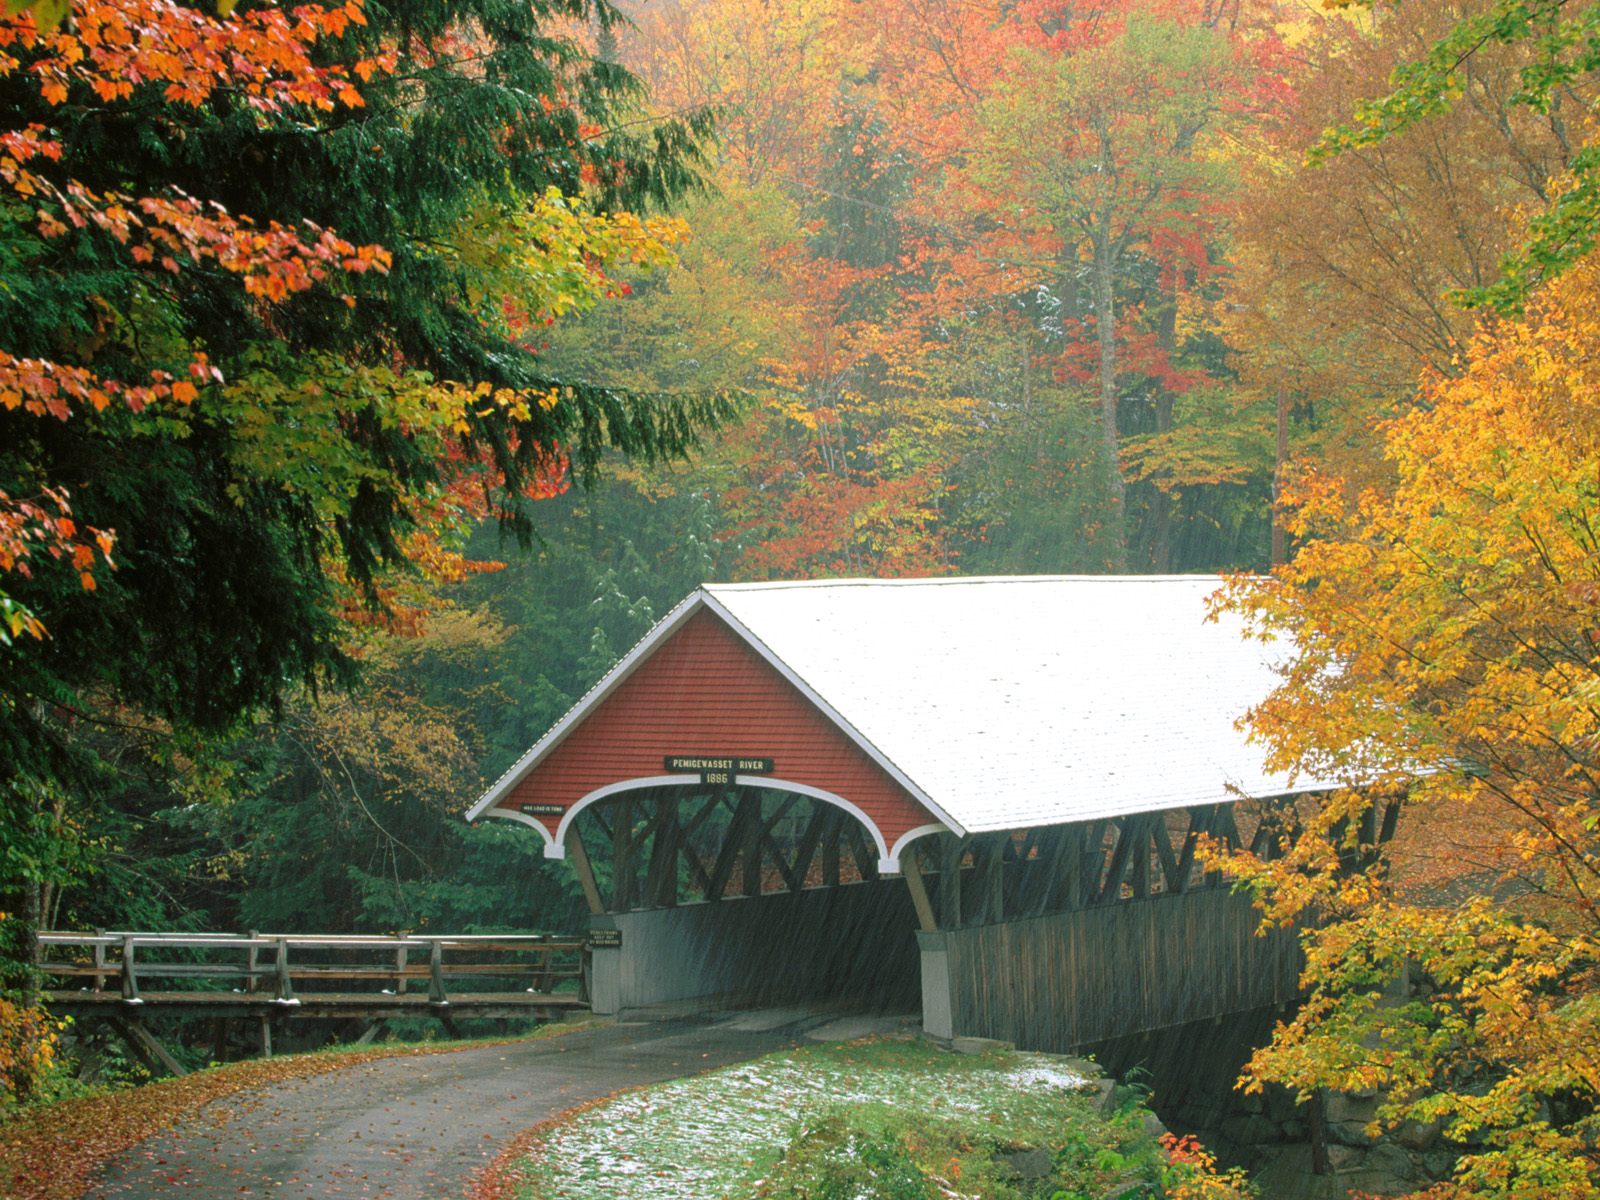  Park New Hampshire   Bridges Roads Photography Desktop Wallpapers